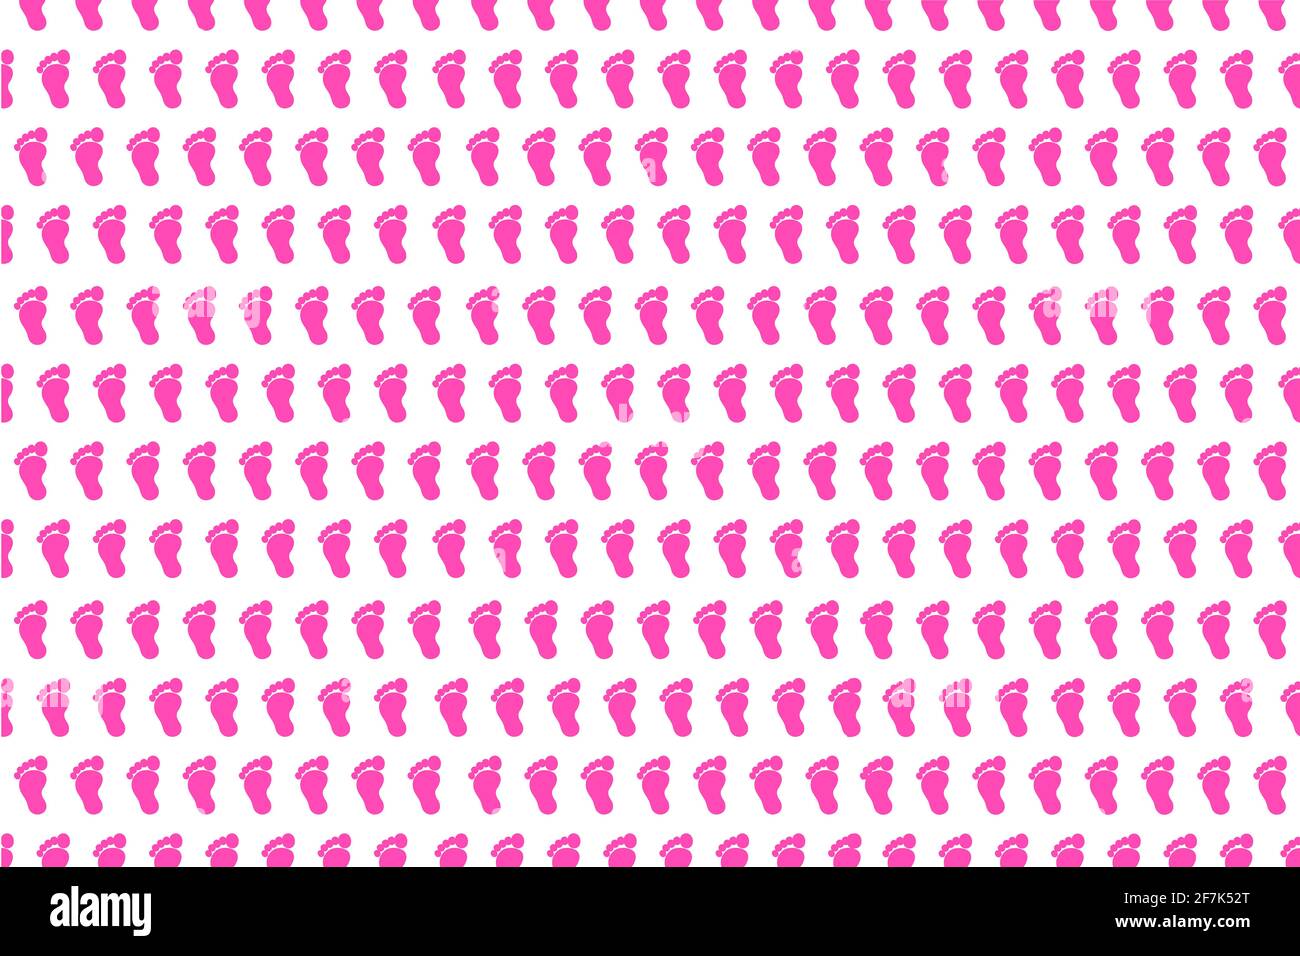 Hintergrund Füße Fußabdruck barfuß Sohle des Fußes Symbol rosa weiß Muster Logo Design Vorlage Vorlage Geschenk isoliert Website Struktur Papier Stoff Stockfoto